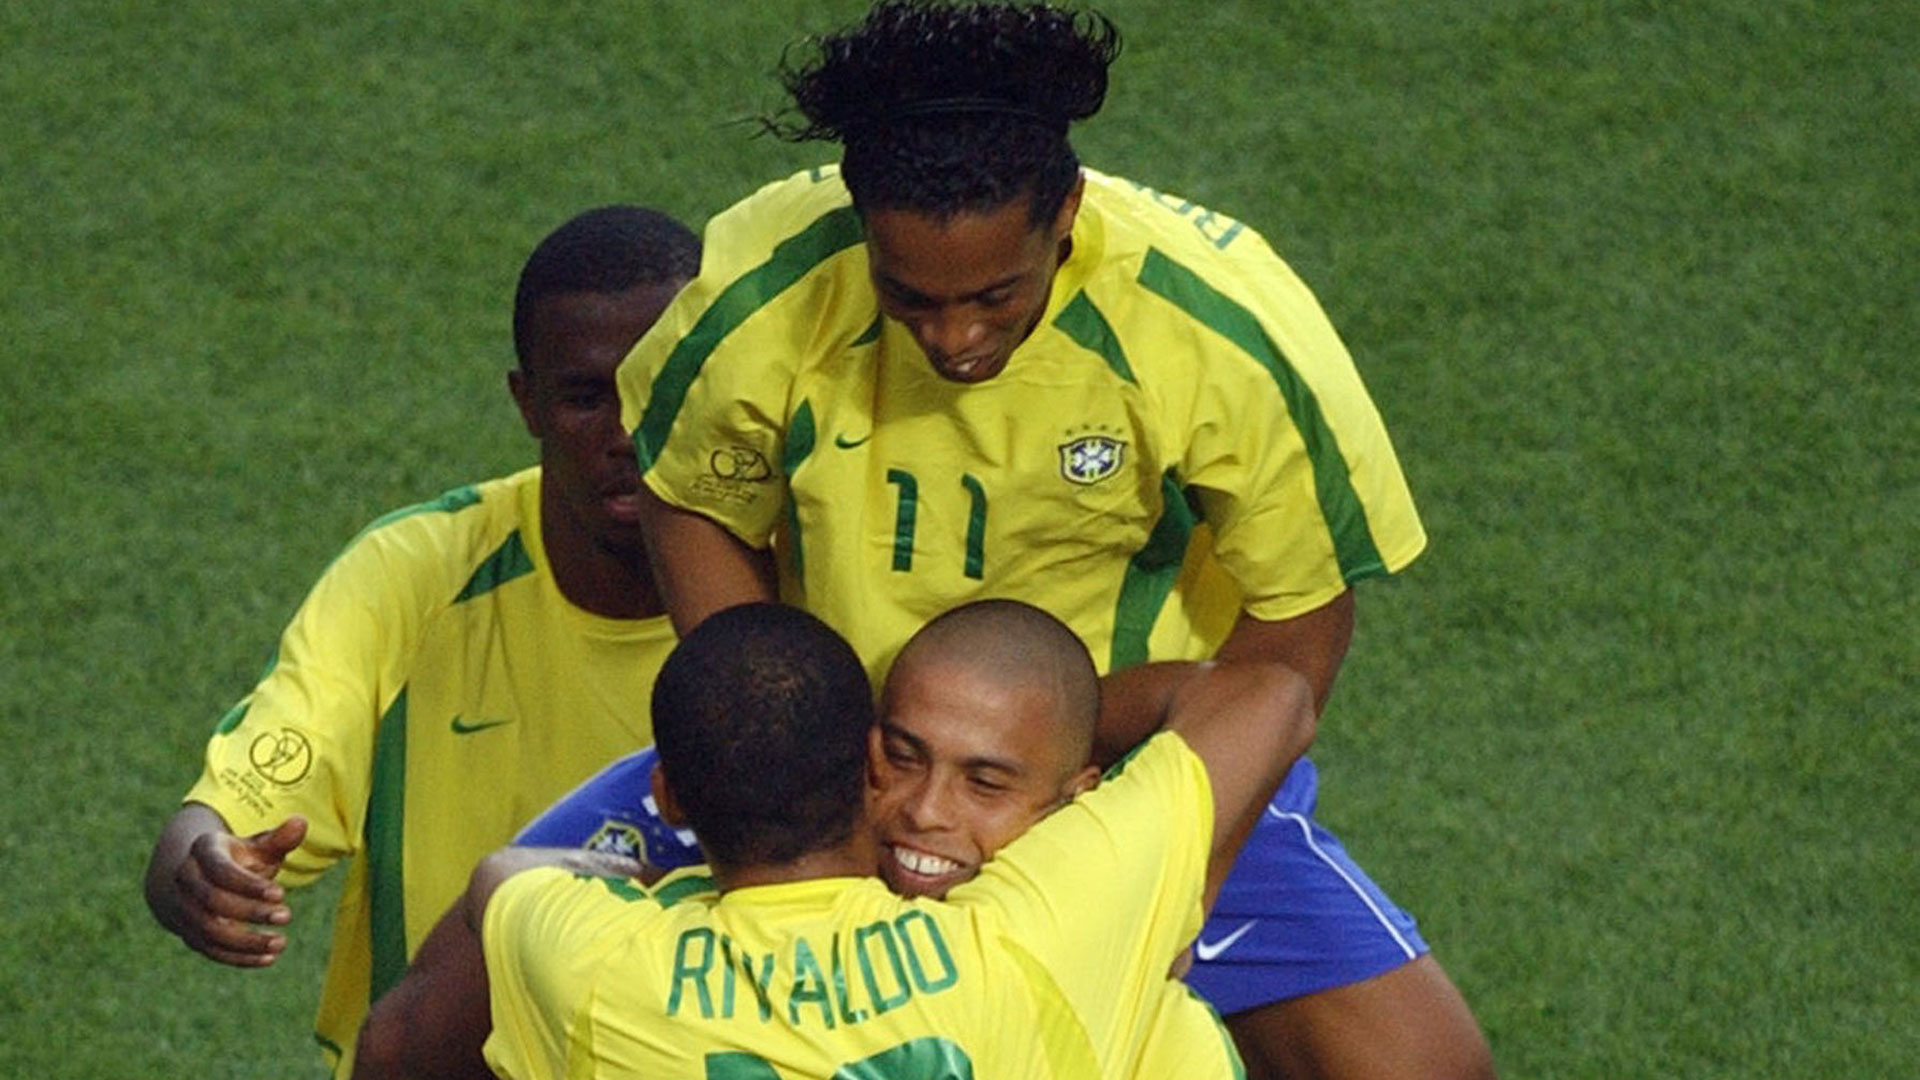  Ronaldo  Rivaldo Ronaldinho Brazil  2002 World Cup Goal com